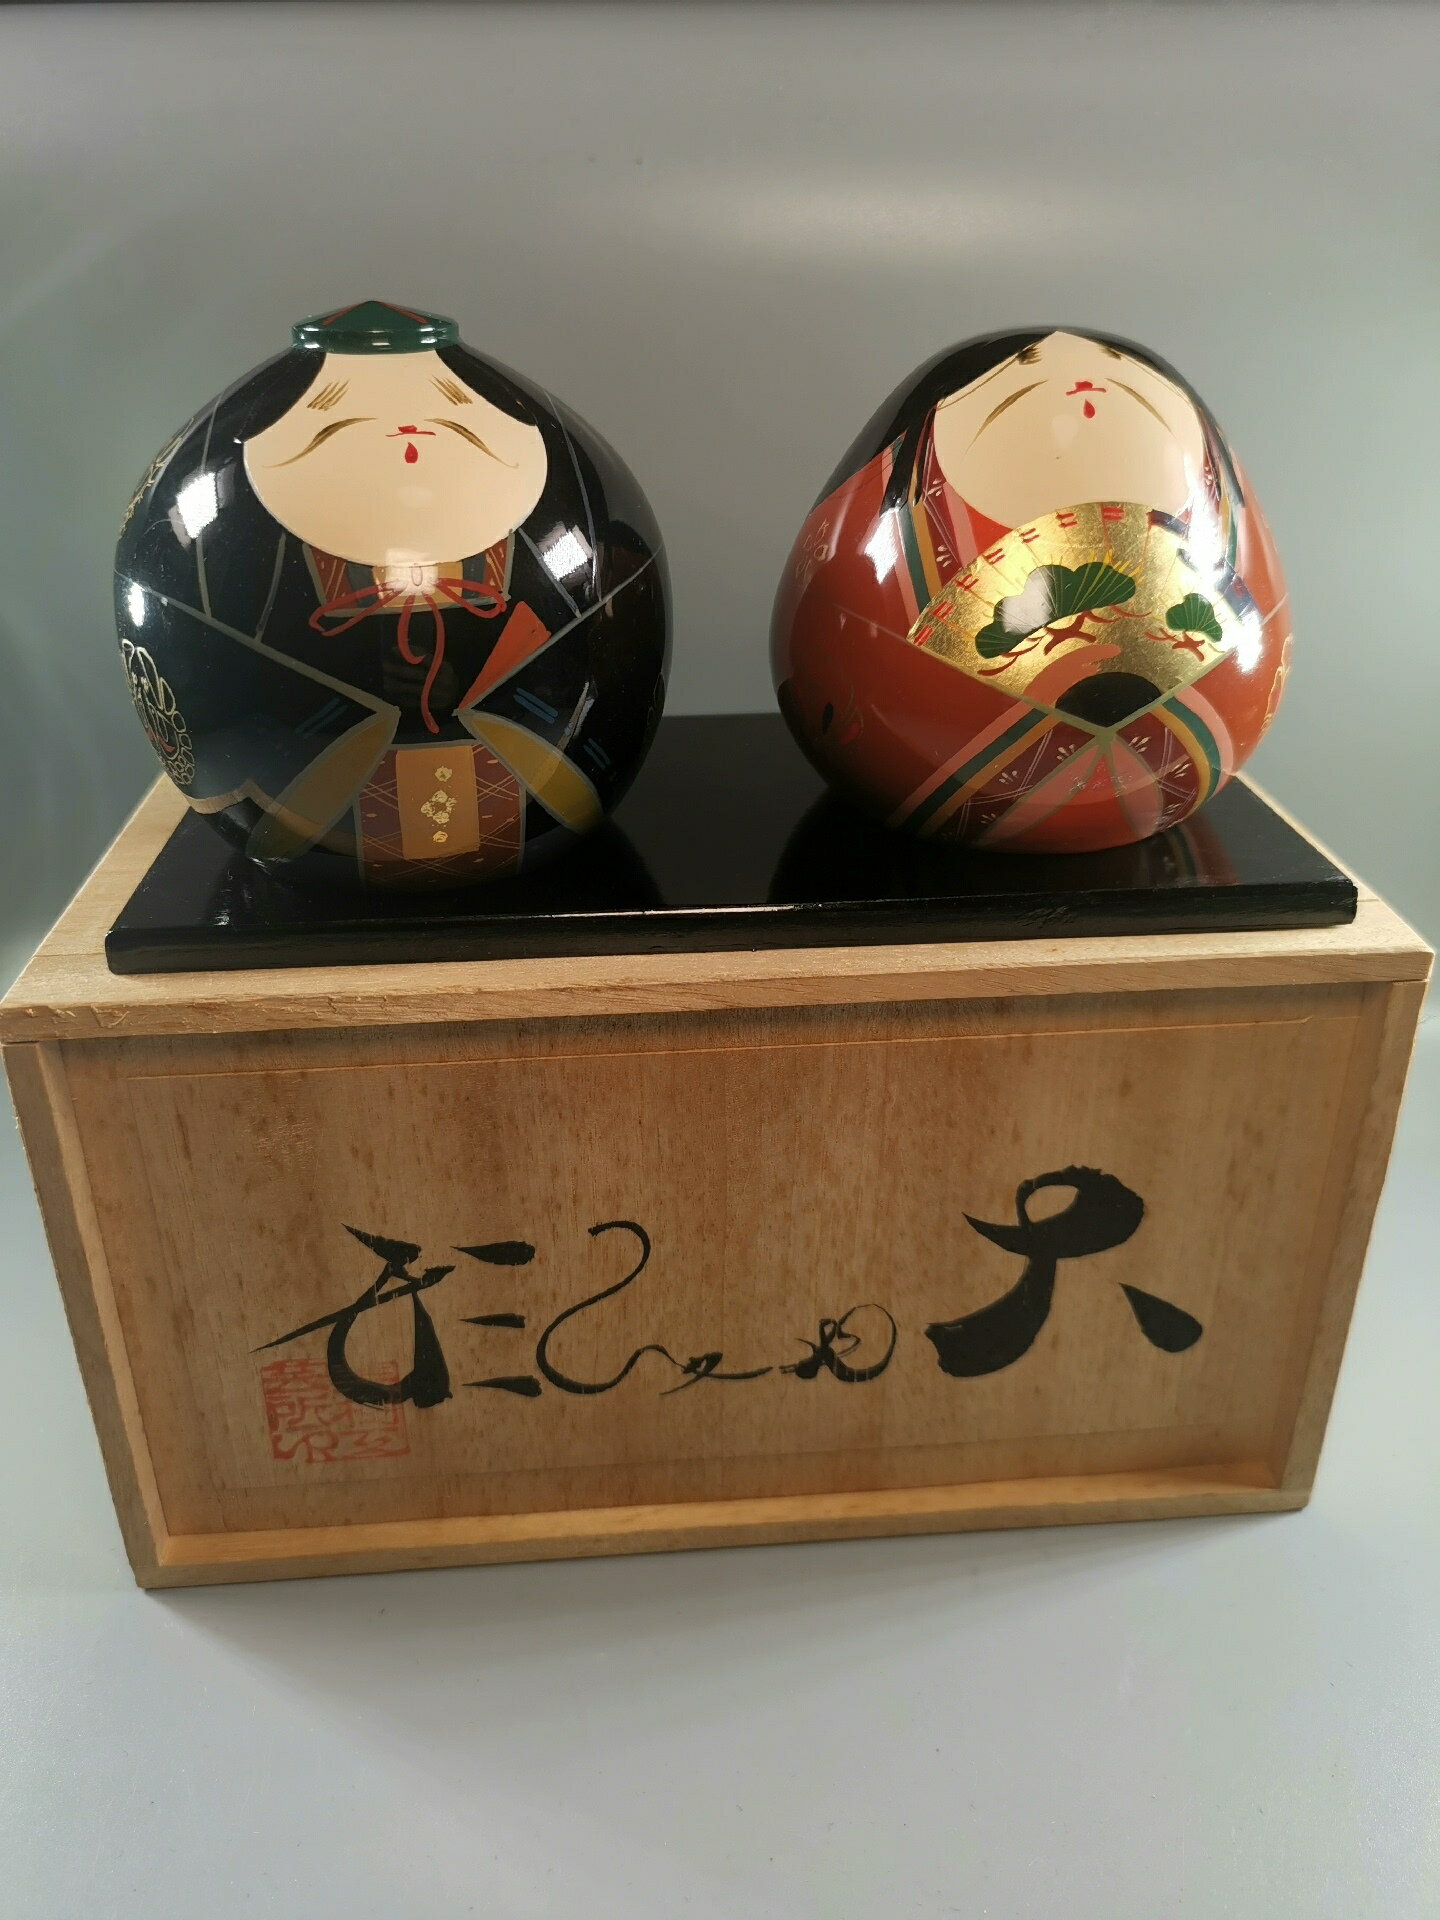 日本山口縣傳統工藝——大內涂漆器工藝品大內人形一對。日本山口